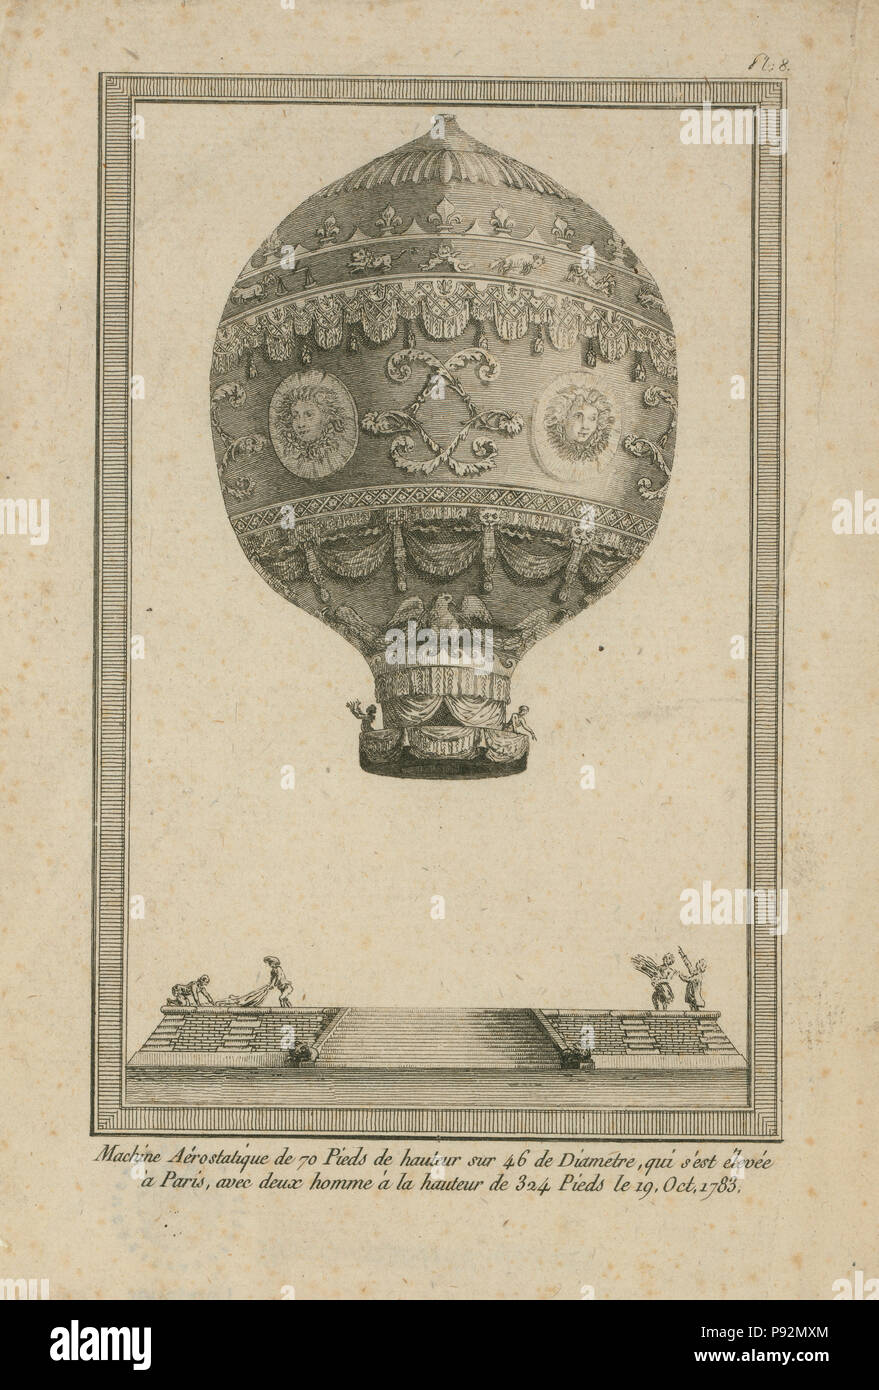 Ballon ornés utilisés par Jean François Pilâtre de Rozier et Girond de Villette dans une ascension en ballon captif de Paris, le 19 octobre 1783, atteignant une altitude de 330 pieds Banque D'Images